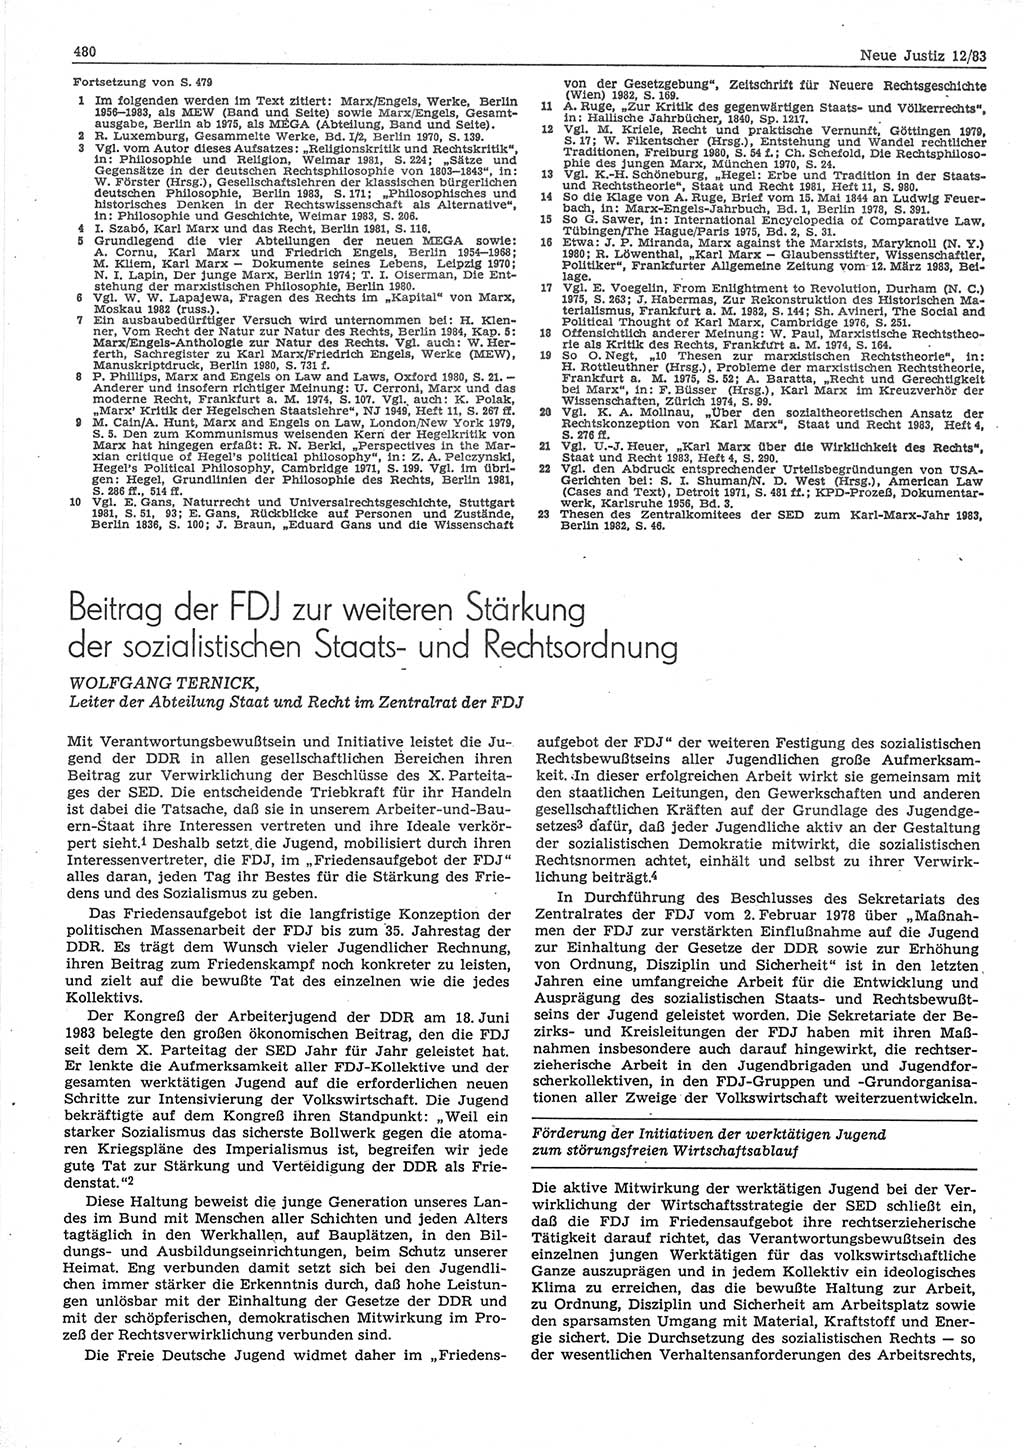 Neue Justiz (NJ), Zeitschrift für sozialistisches Recht und Gesetzlichkeit [Deutsche Demokratische Republik (DDR)], 37. Jahrgang 1983, Seite 480 (NJ DDR 1983, S. 480)